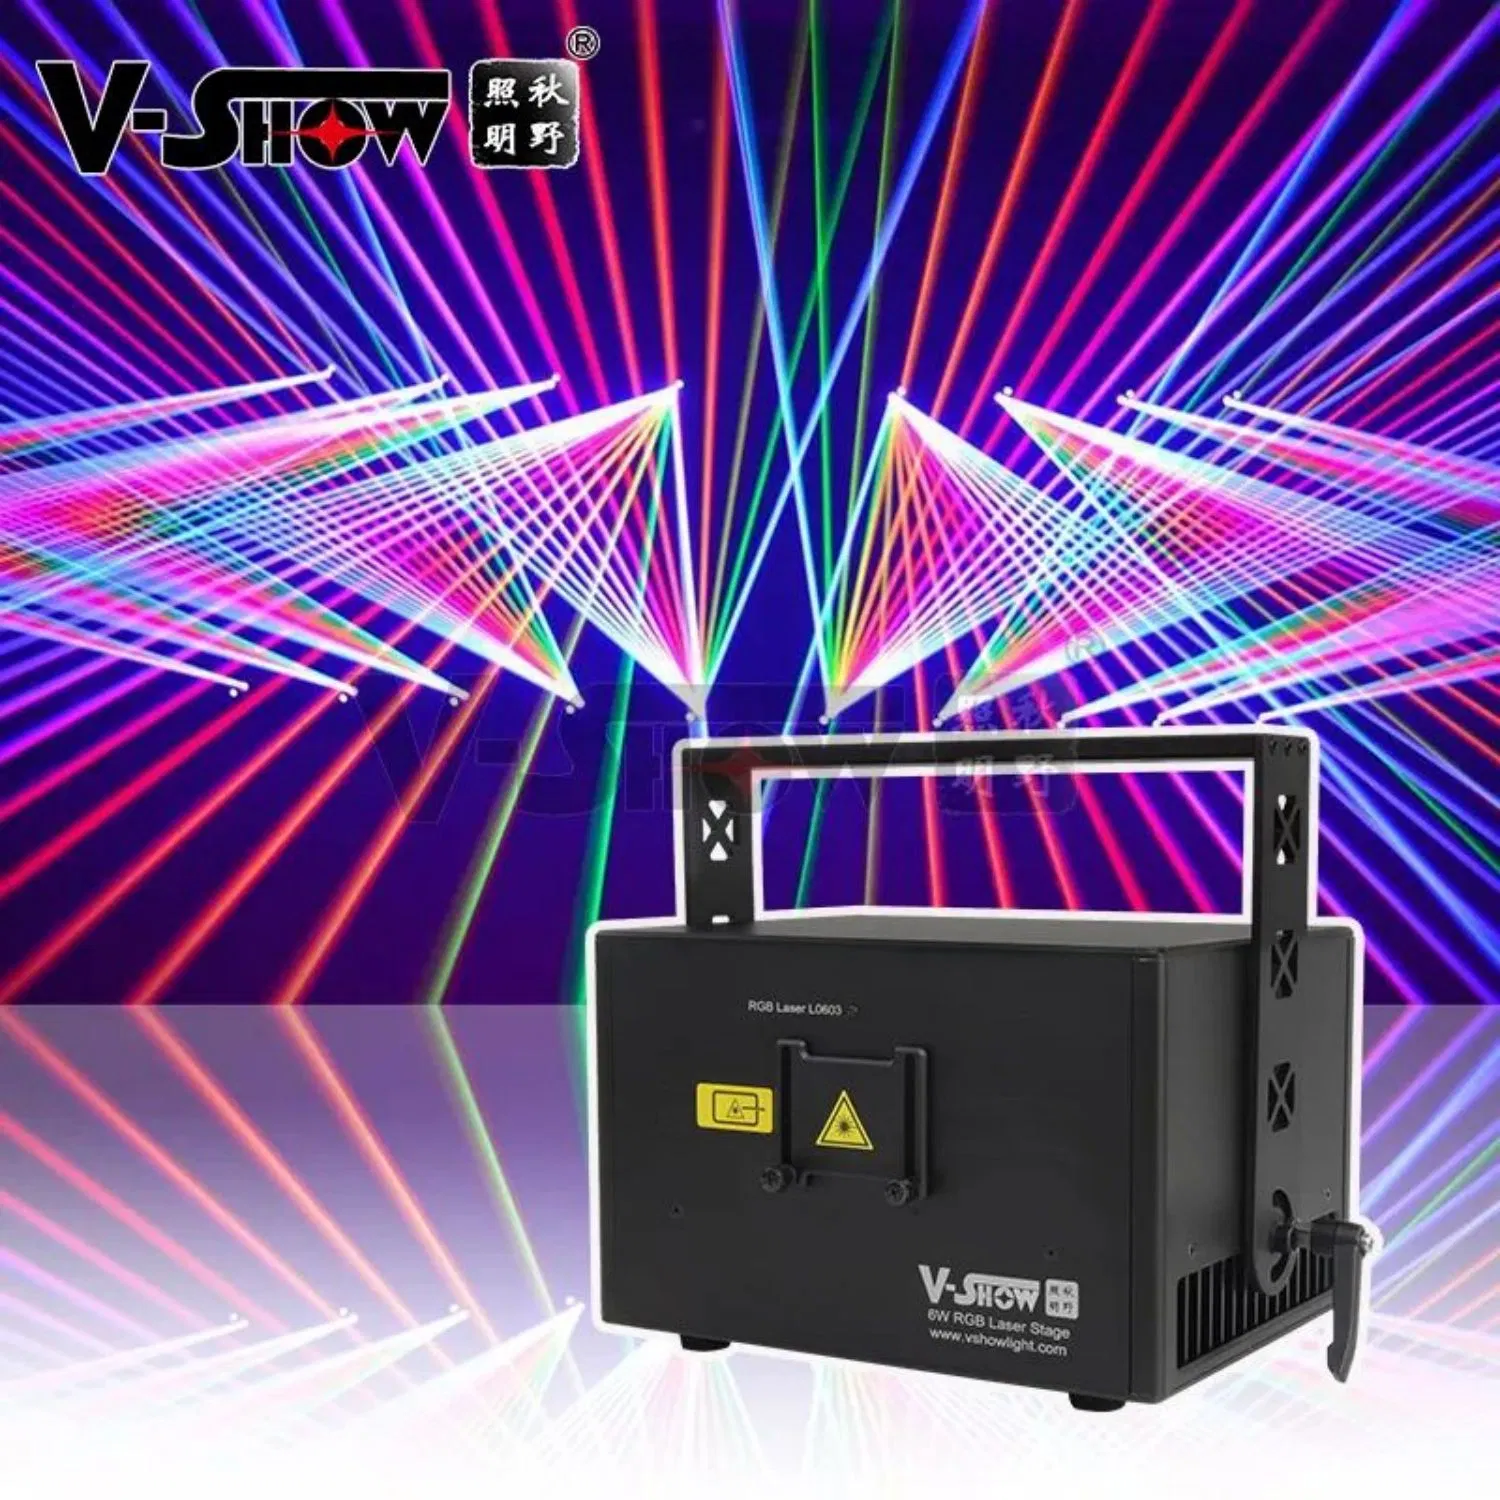 V-Show 6W 30kkps sistema de digitalização alta DMX Ilda 6W RGB DJ Laser Disco Light a cores